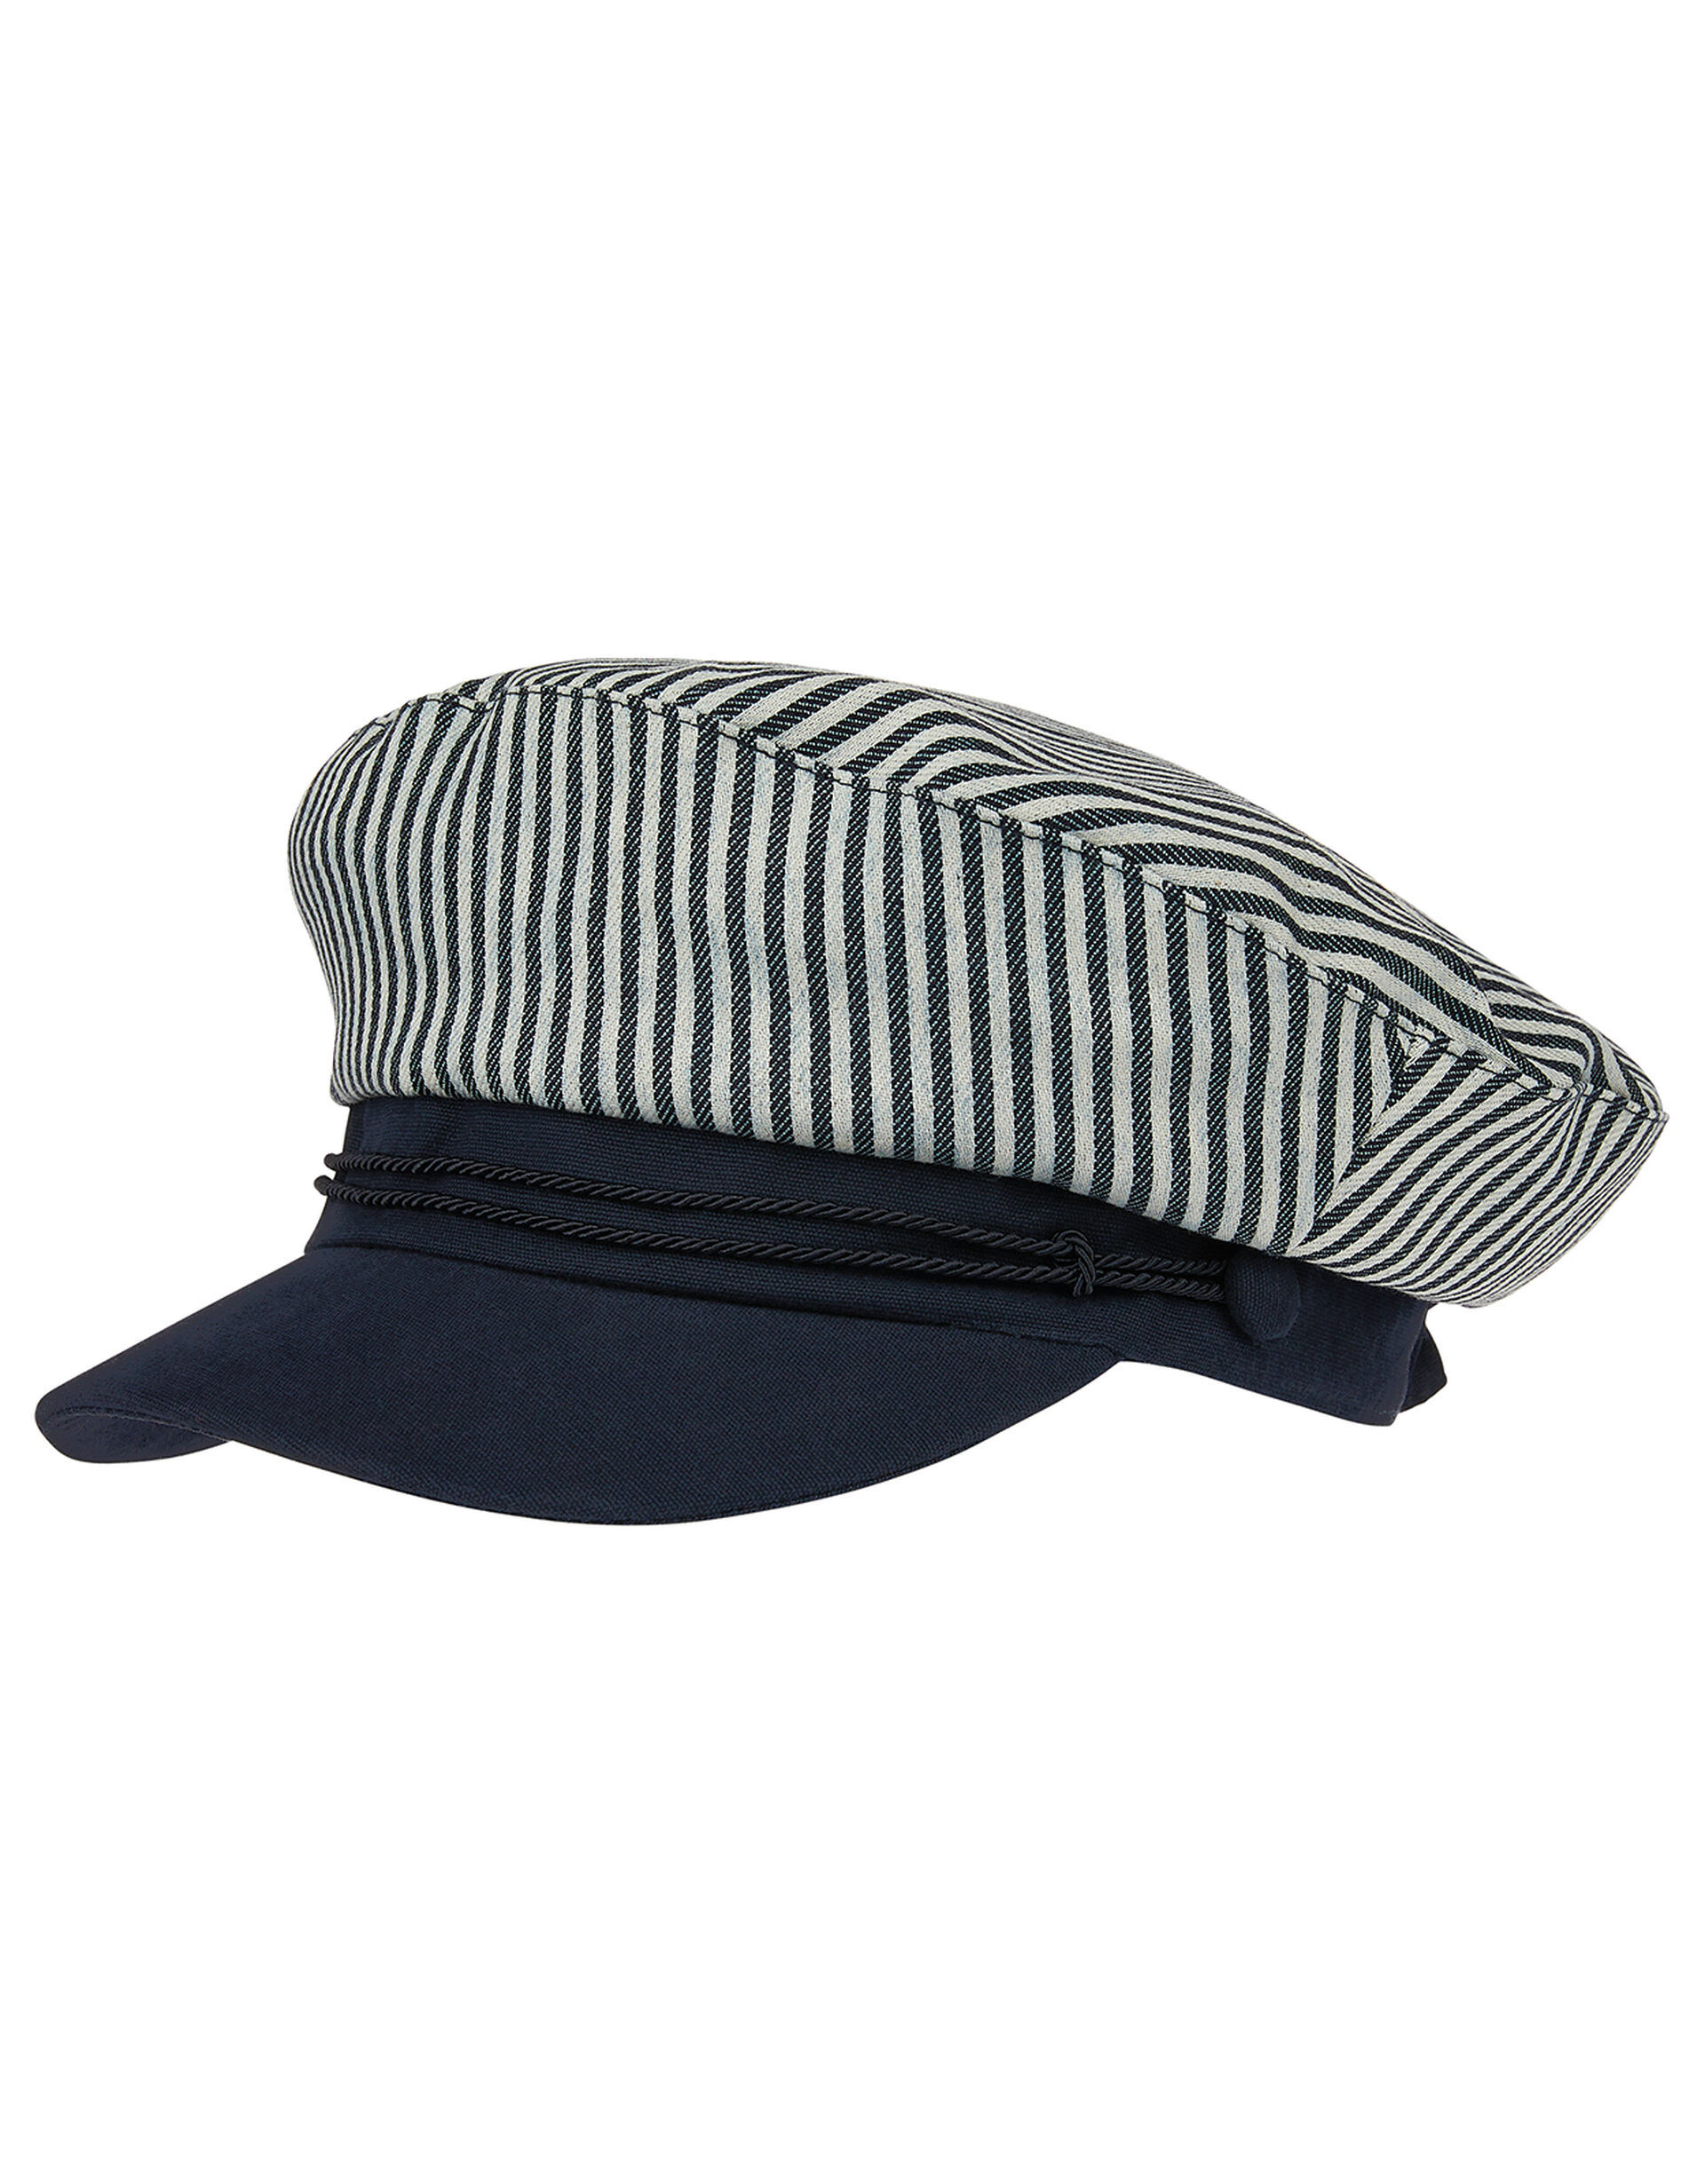 Nautical Stripe Cap, , large